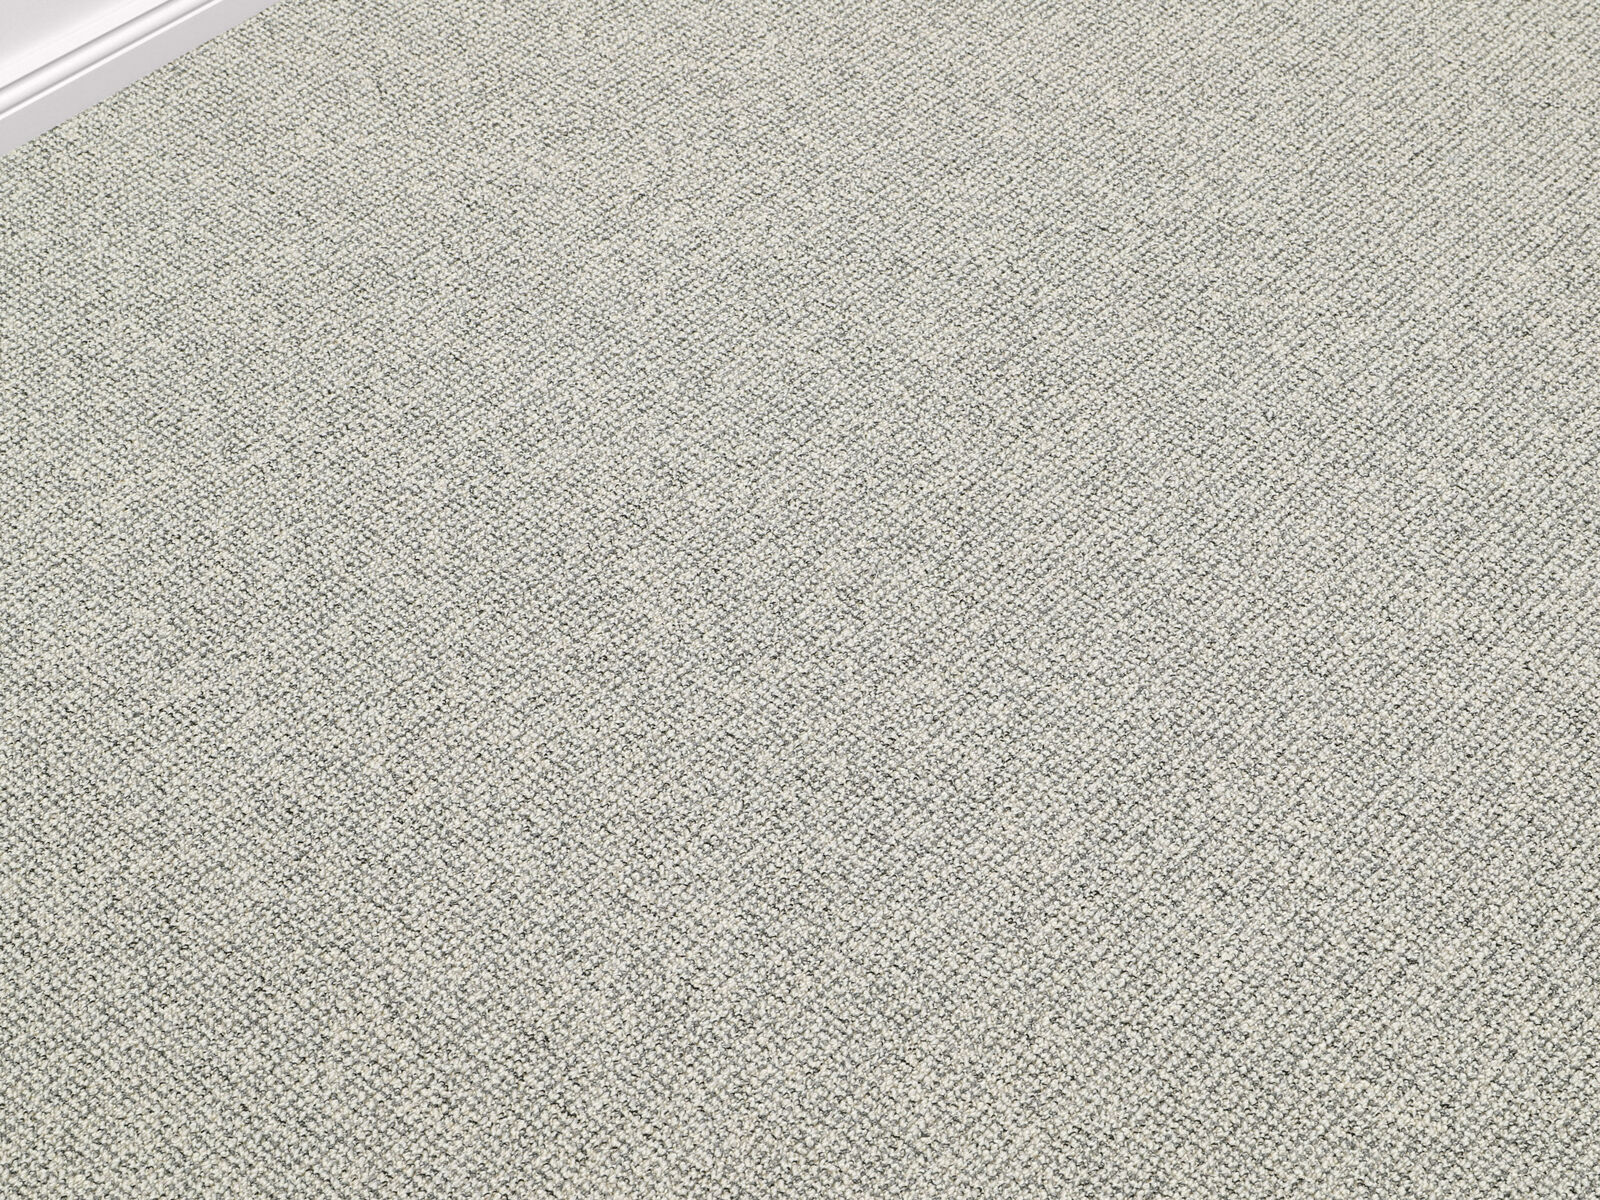 Riad Teppichboden | Texflor Rücken | 4 Farben | 400cm Breite und Raummaß